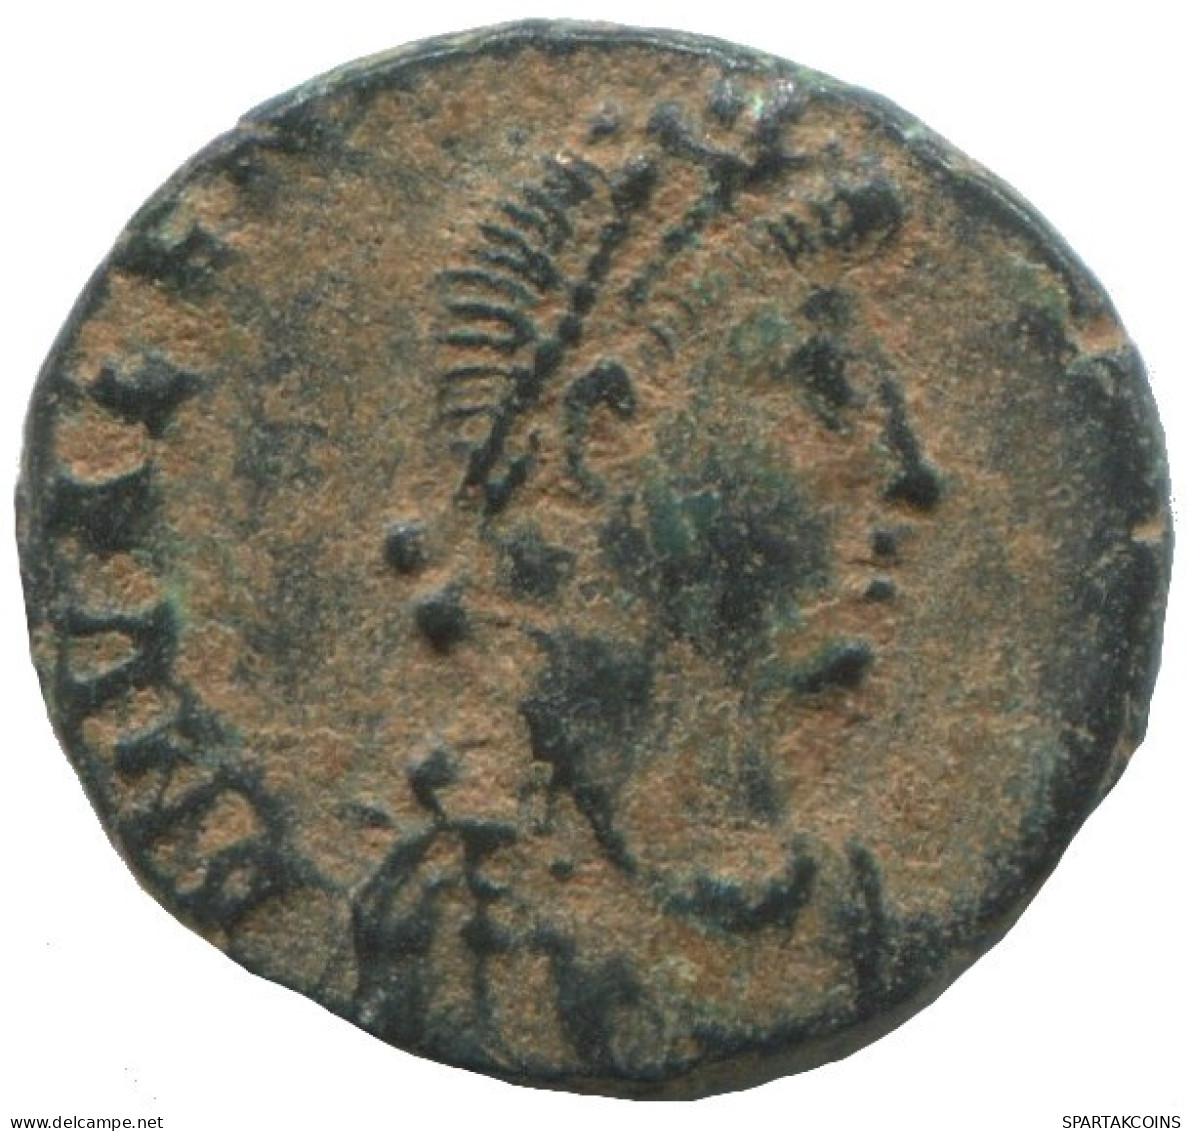 ARCADIUS ANTIOCHE AD388-391 SALVS REI-PVBLICAE VICTORIA 1.3g/13mm #ANN1356.9.E.A - La Fin De L'Empire (363-476)